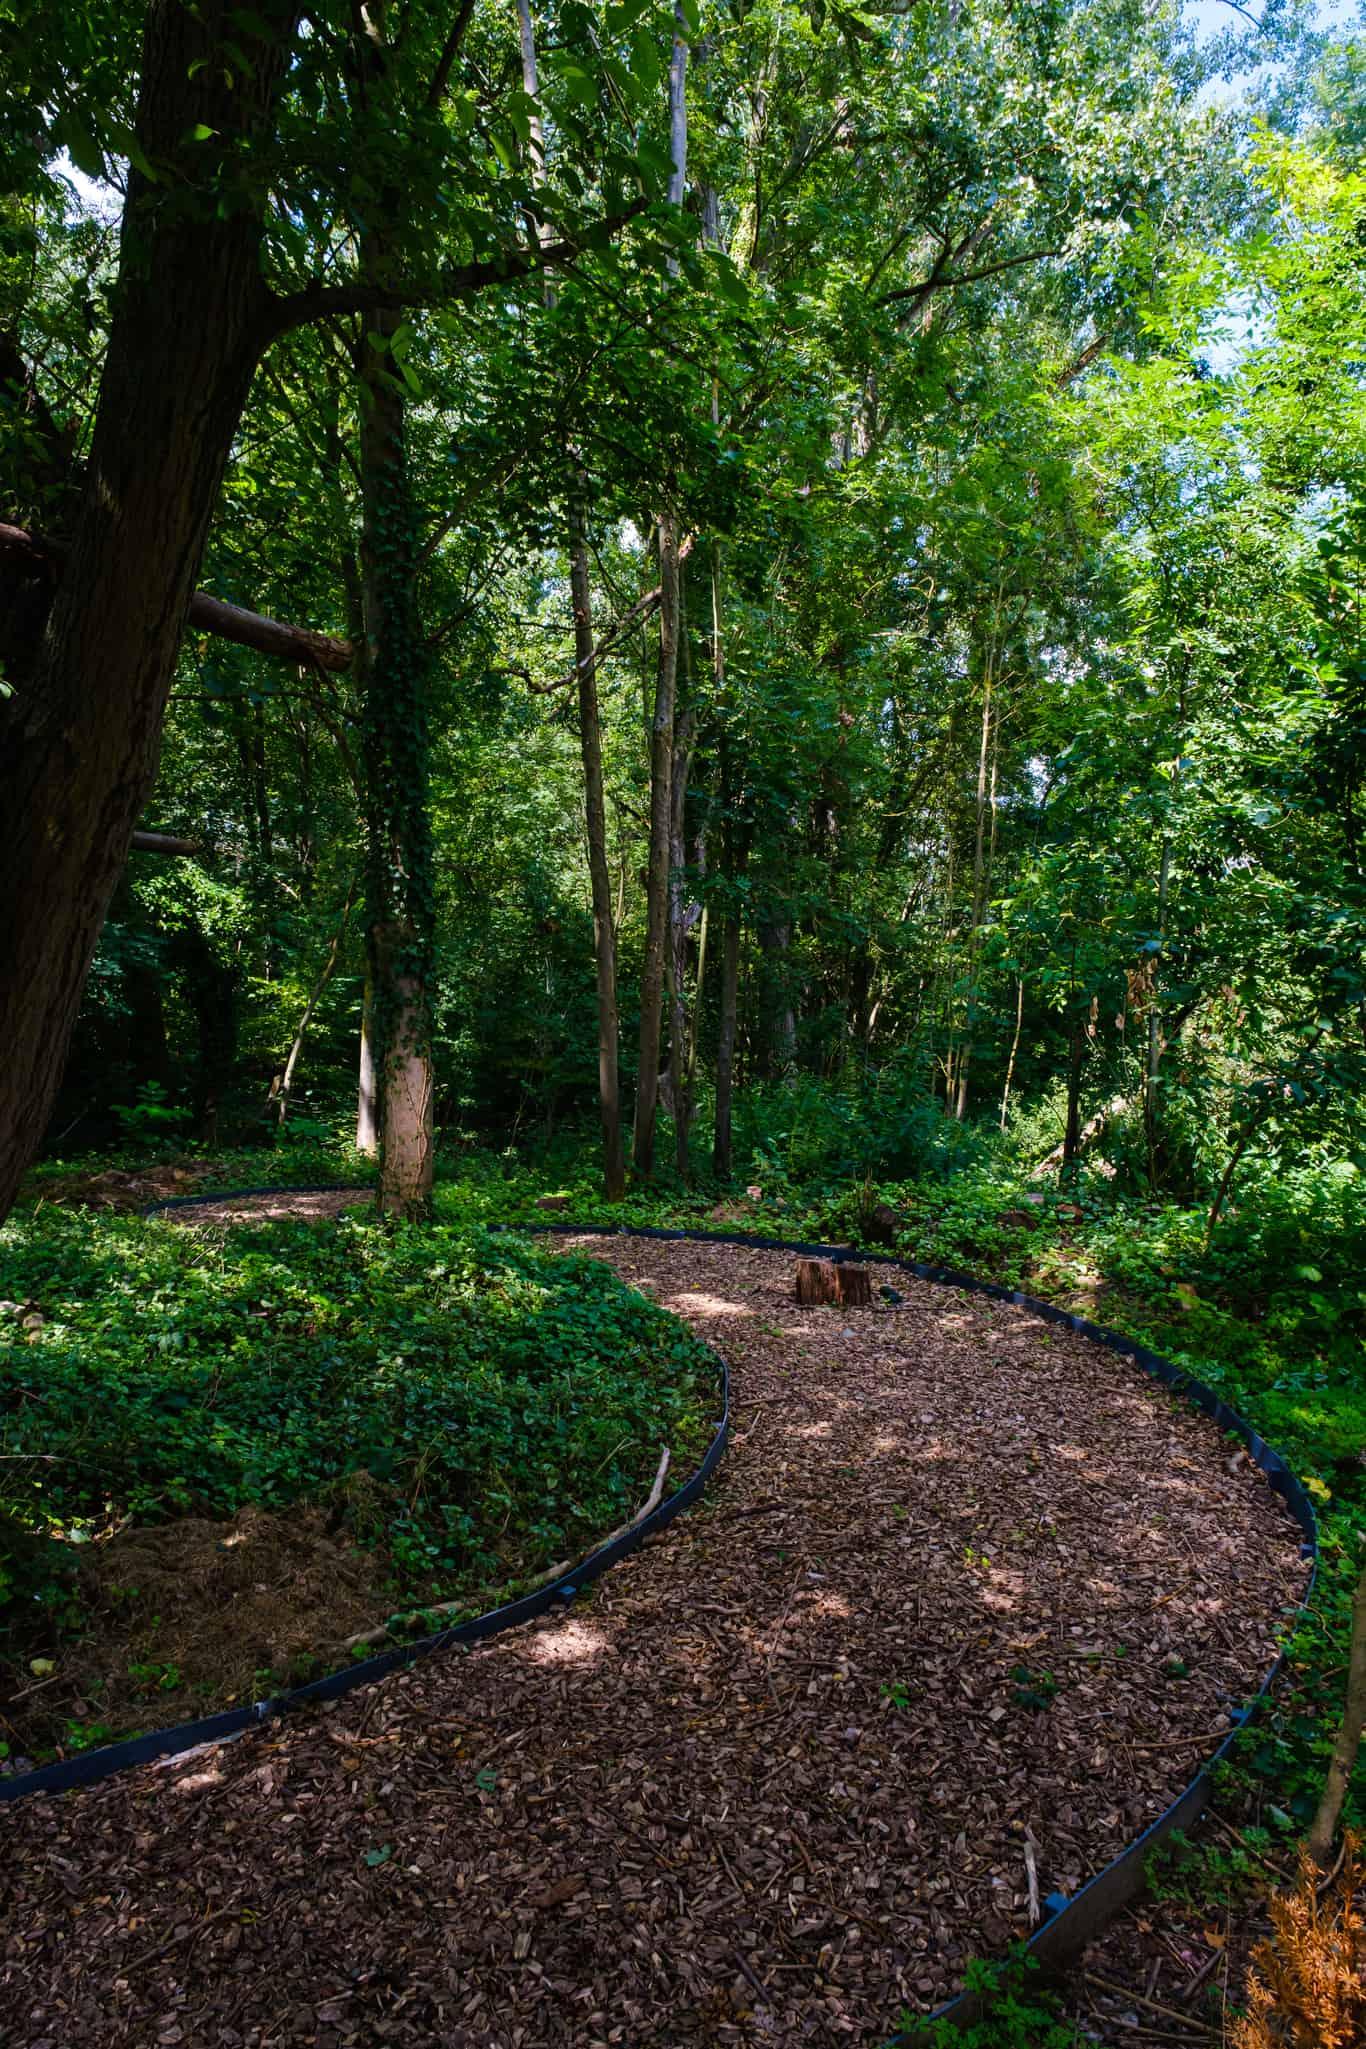 Het pad slingert mooi verder naar het bosgedeelte vanachter in de tuin. Een nieuwe beleving voor wie graag geniet van de rust en de prachtige bomen.nn